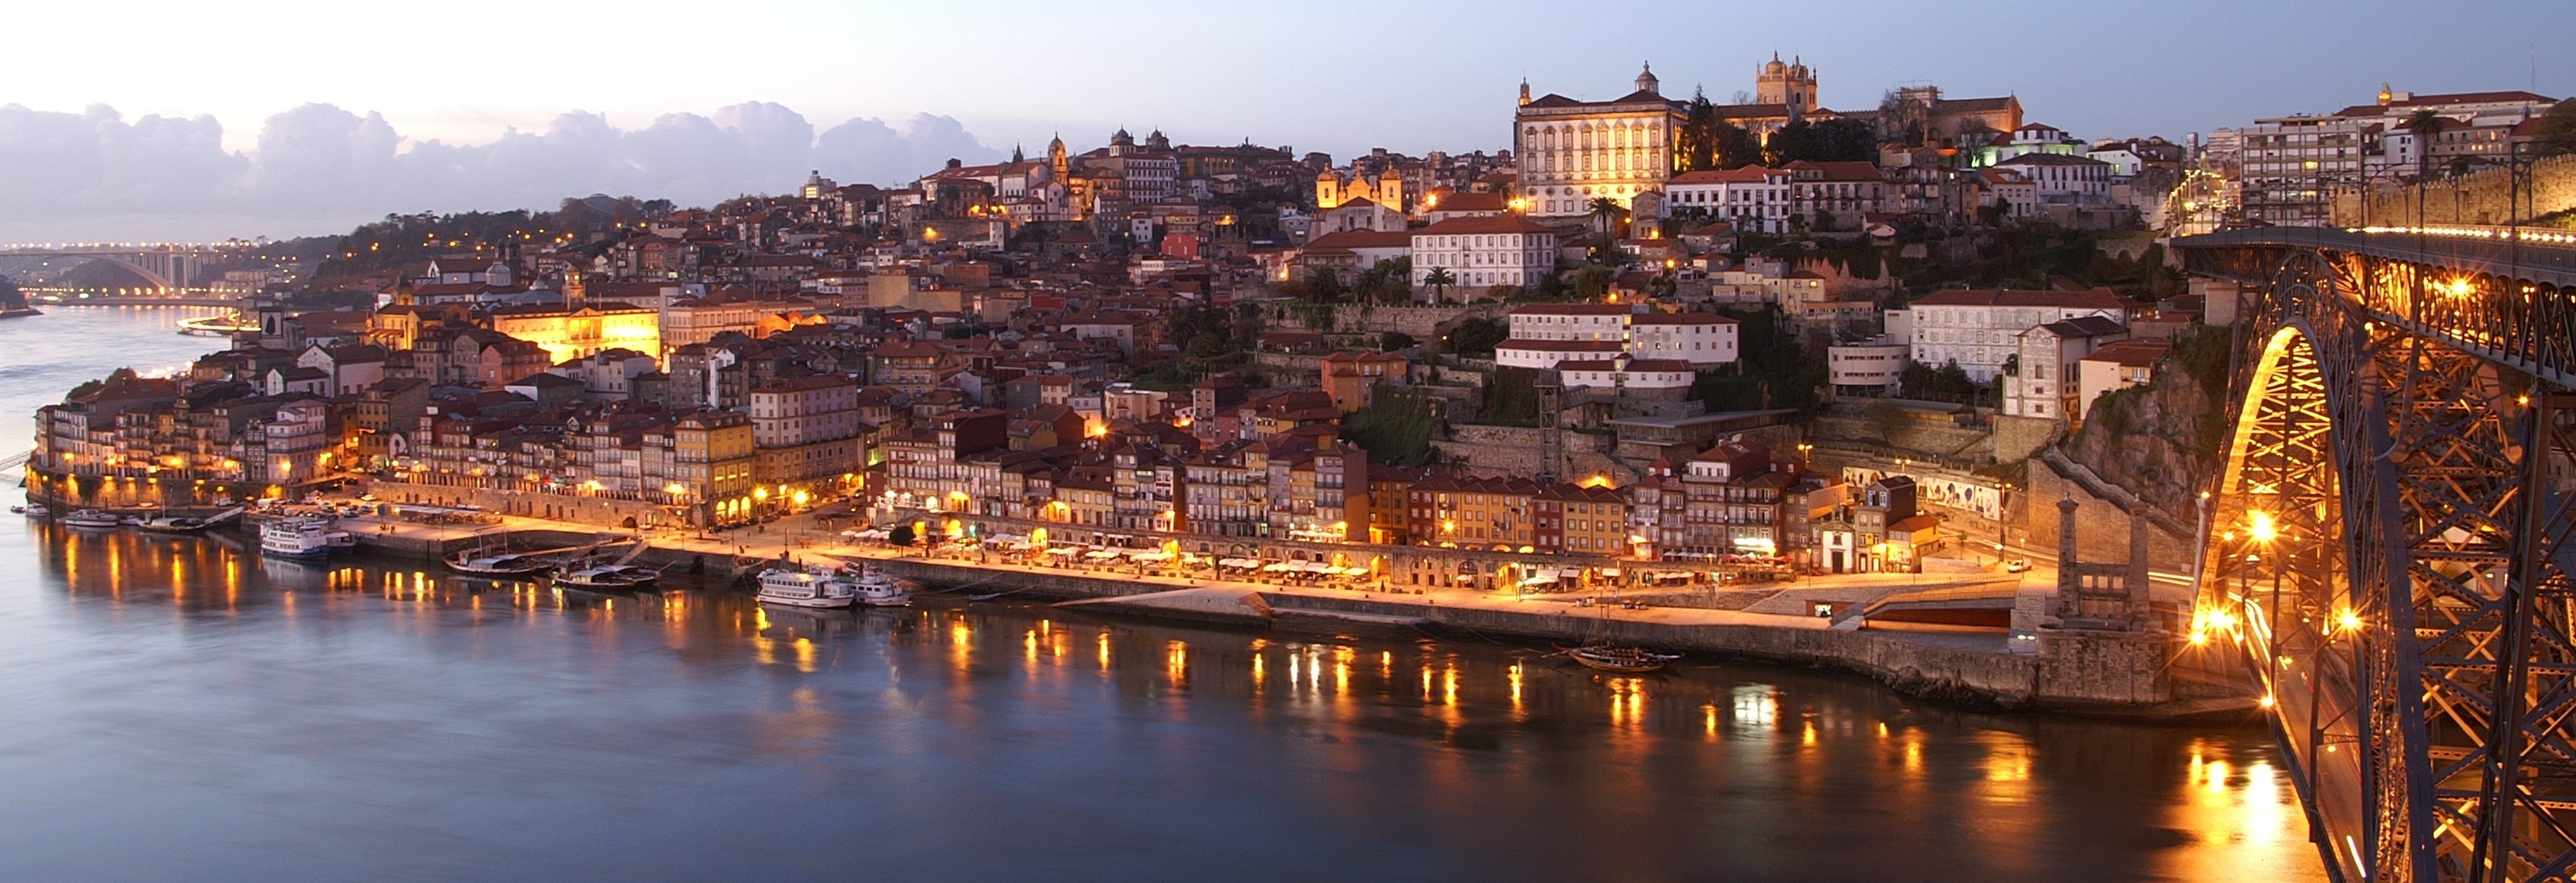 General 2977x1021 Porto night lights landscape cityscape city lights Rio Douro Dom Luís I Bridge